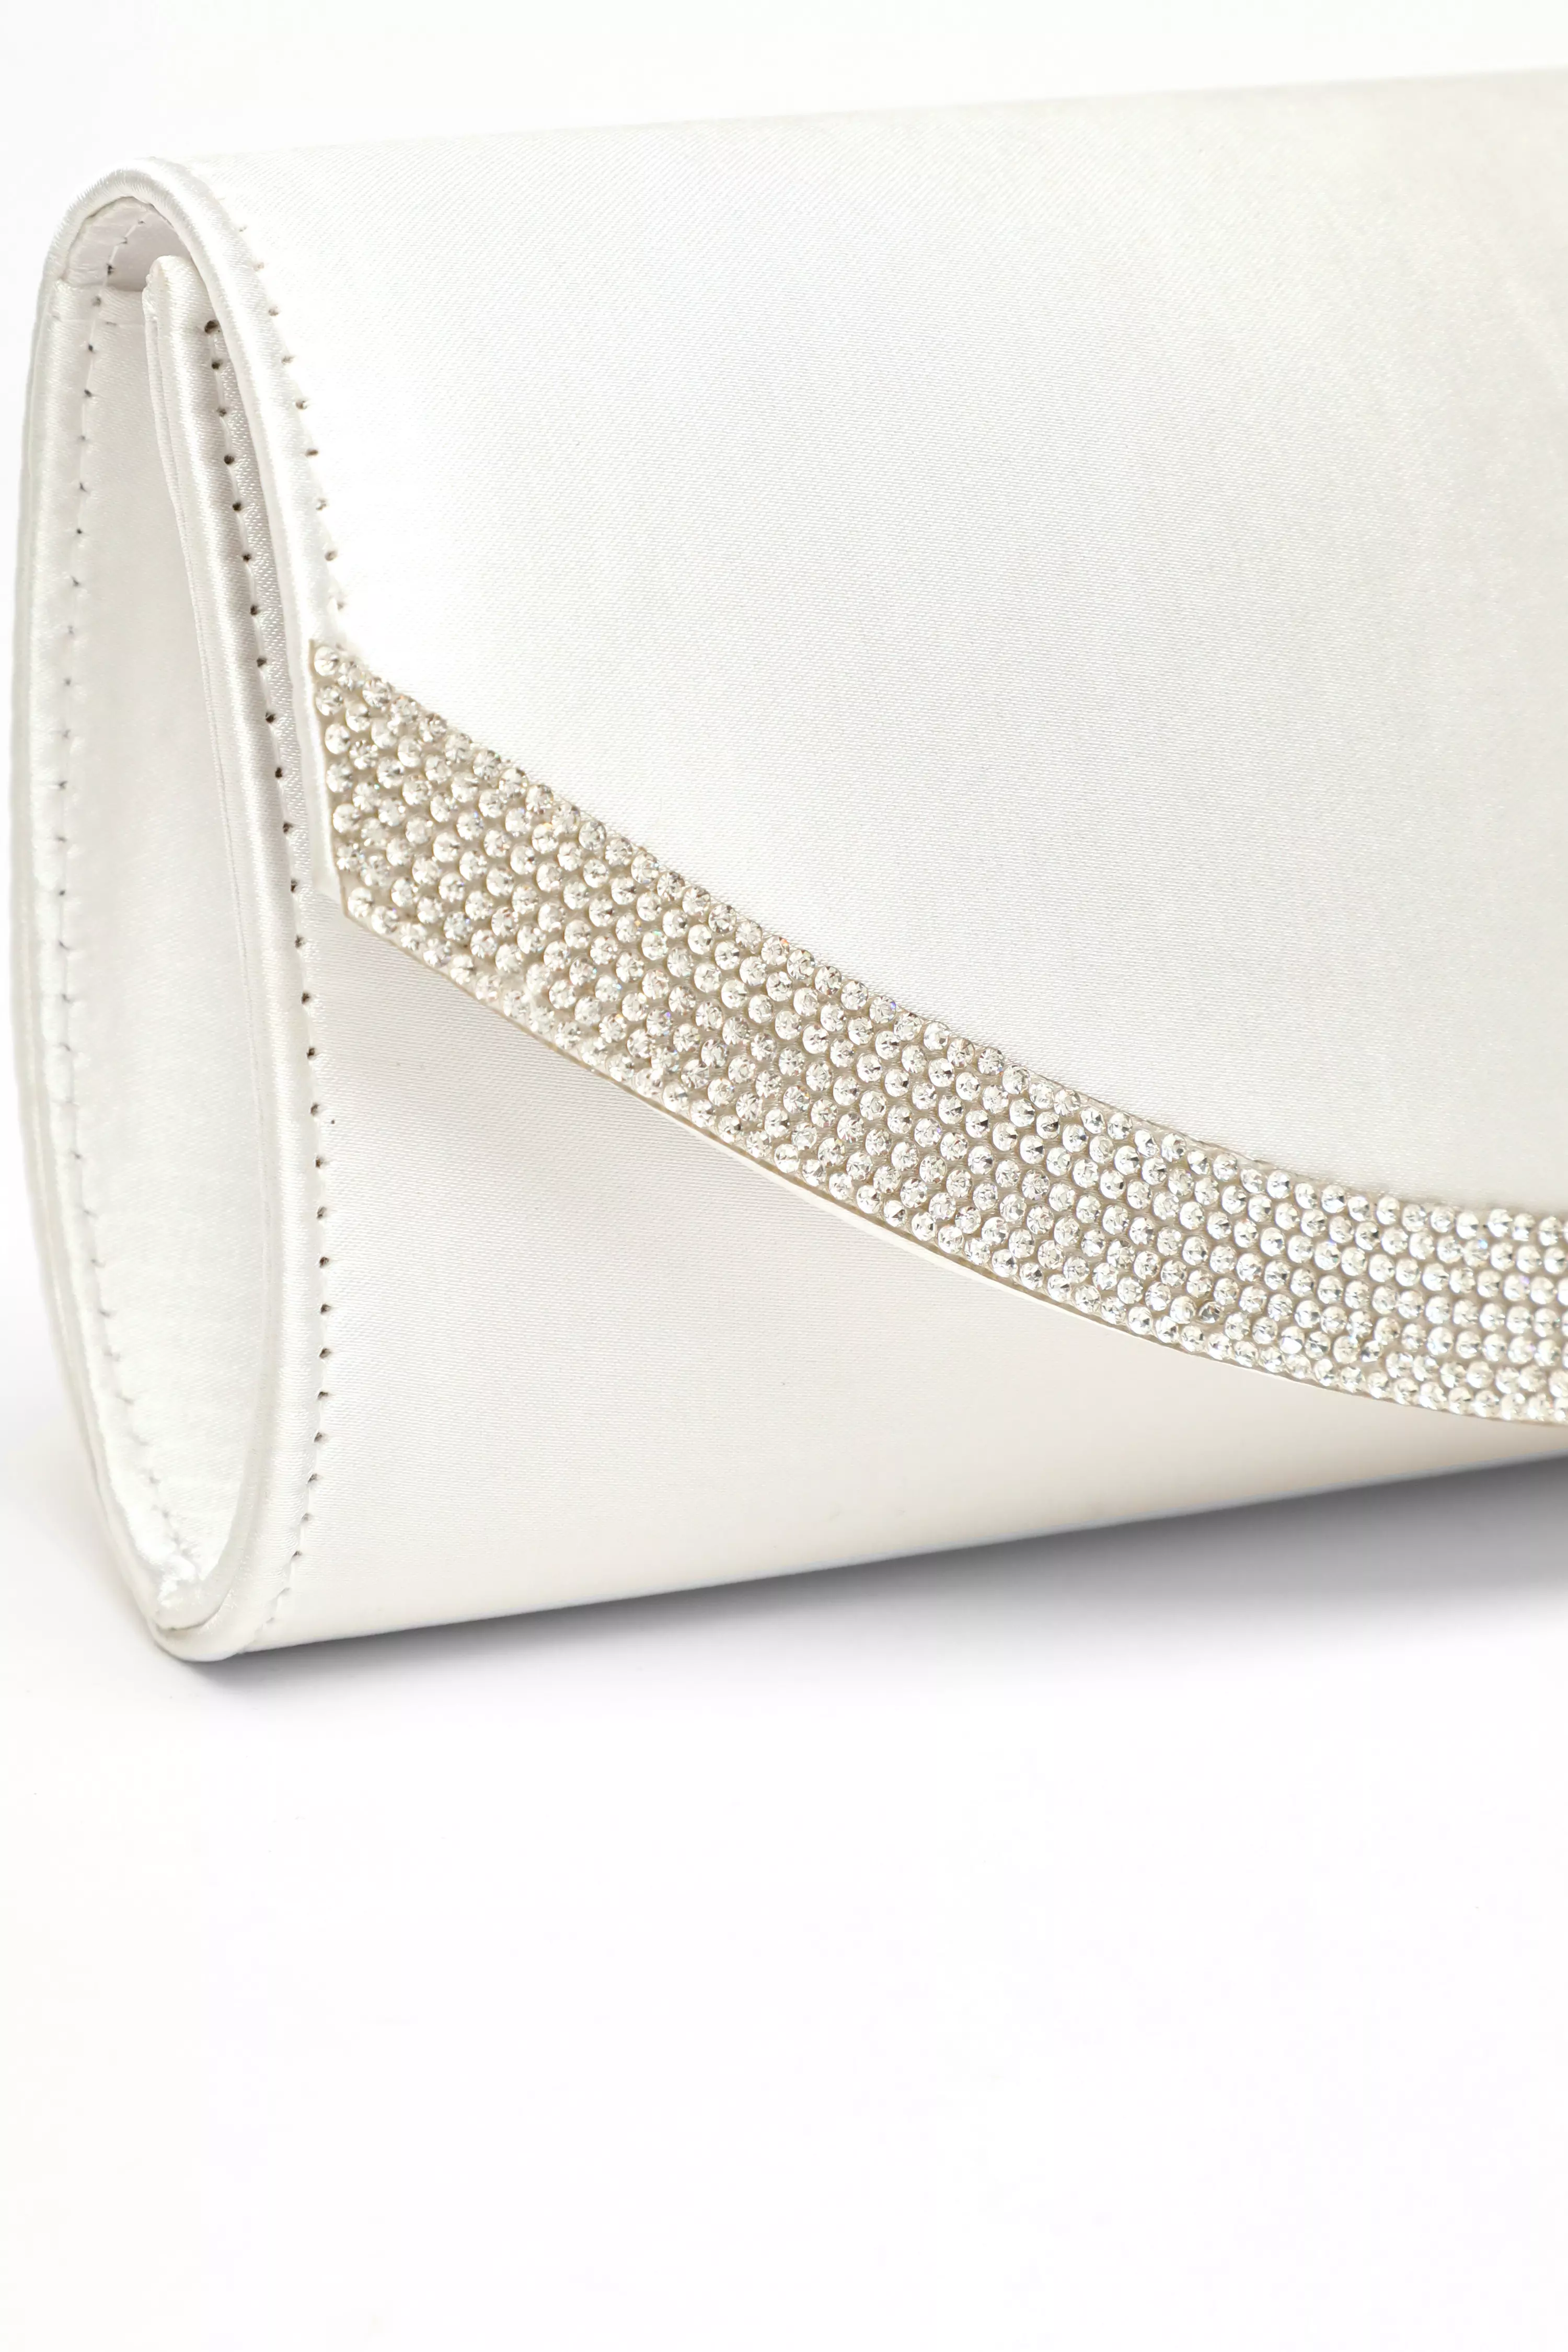 White Satin Embellished Clutch Bag